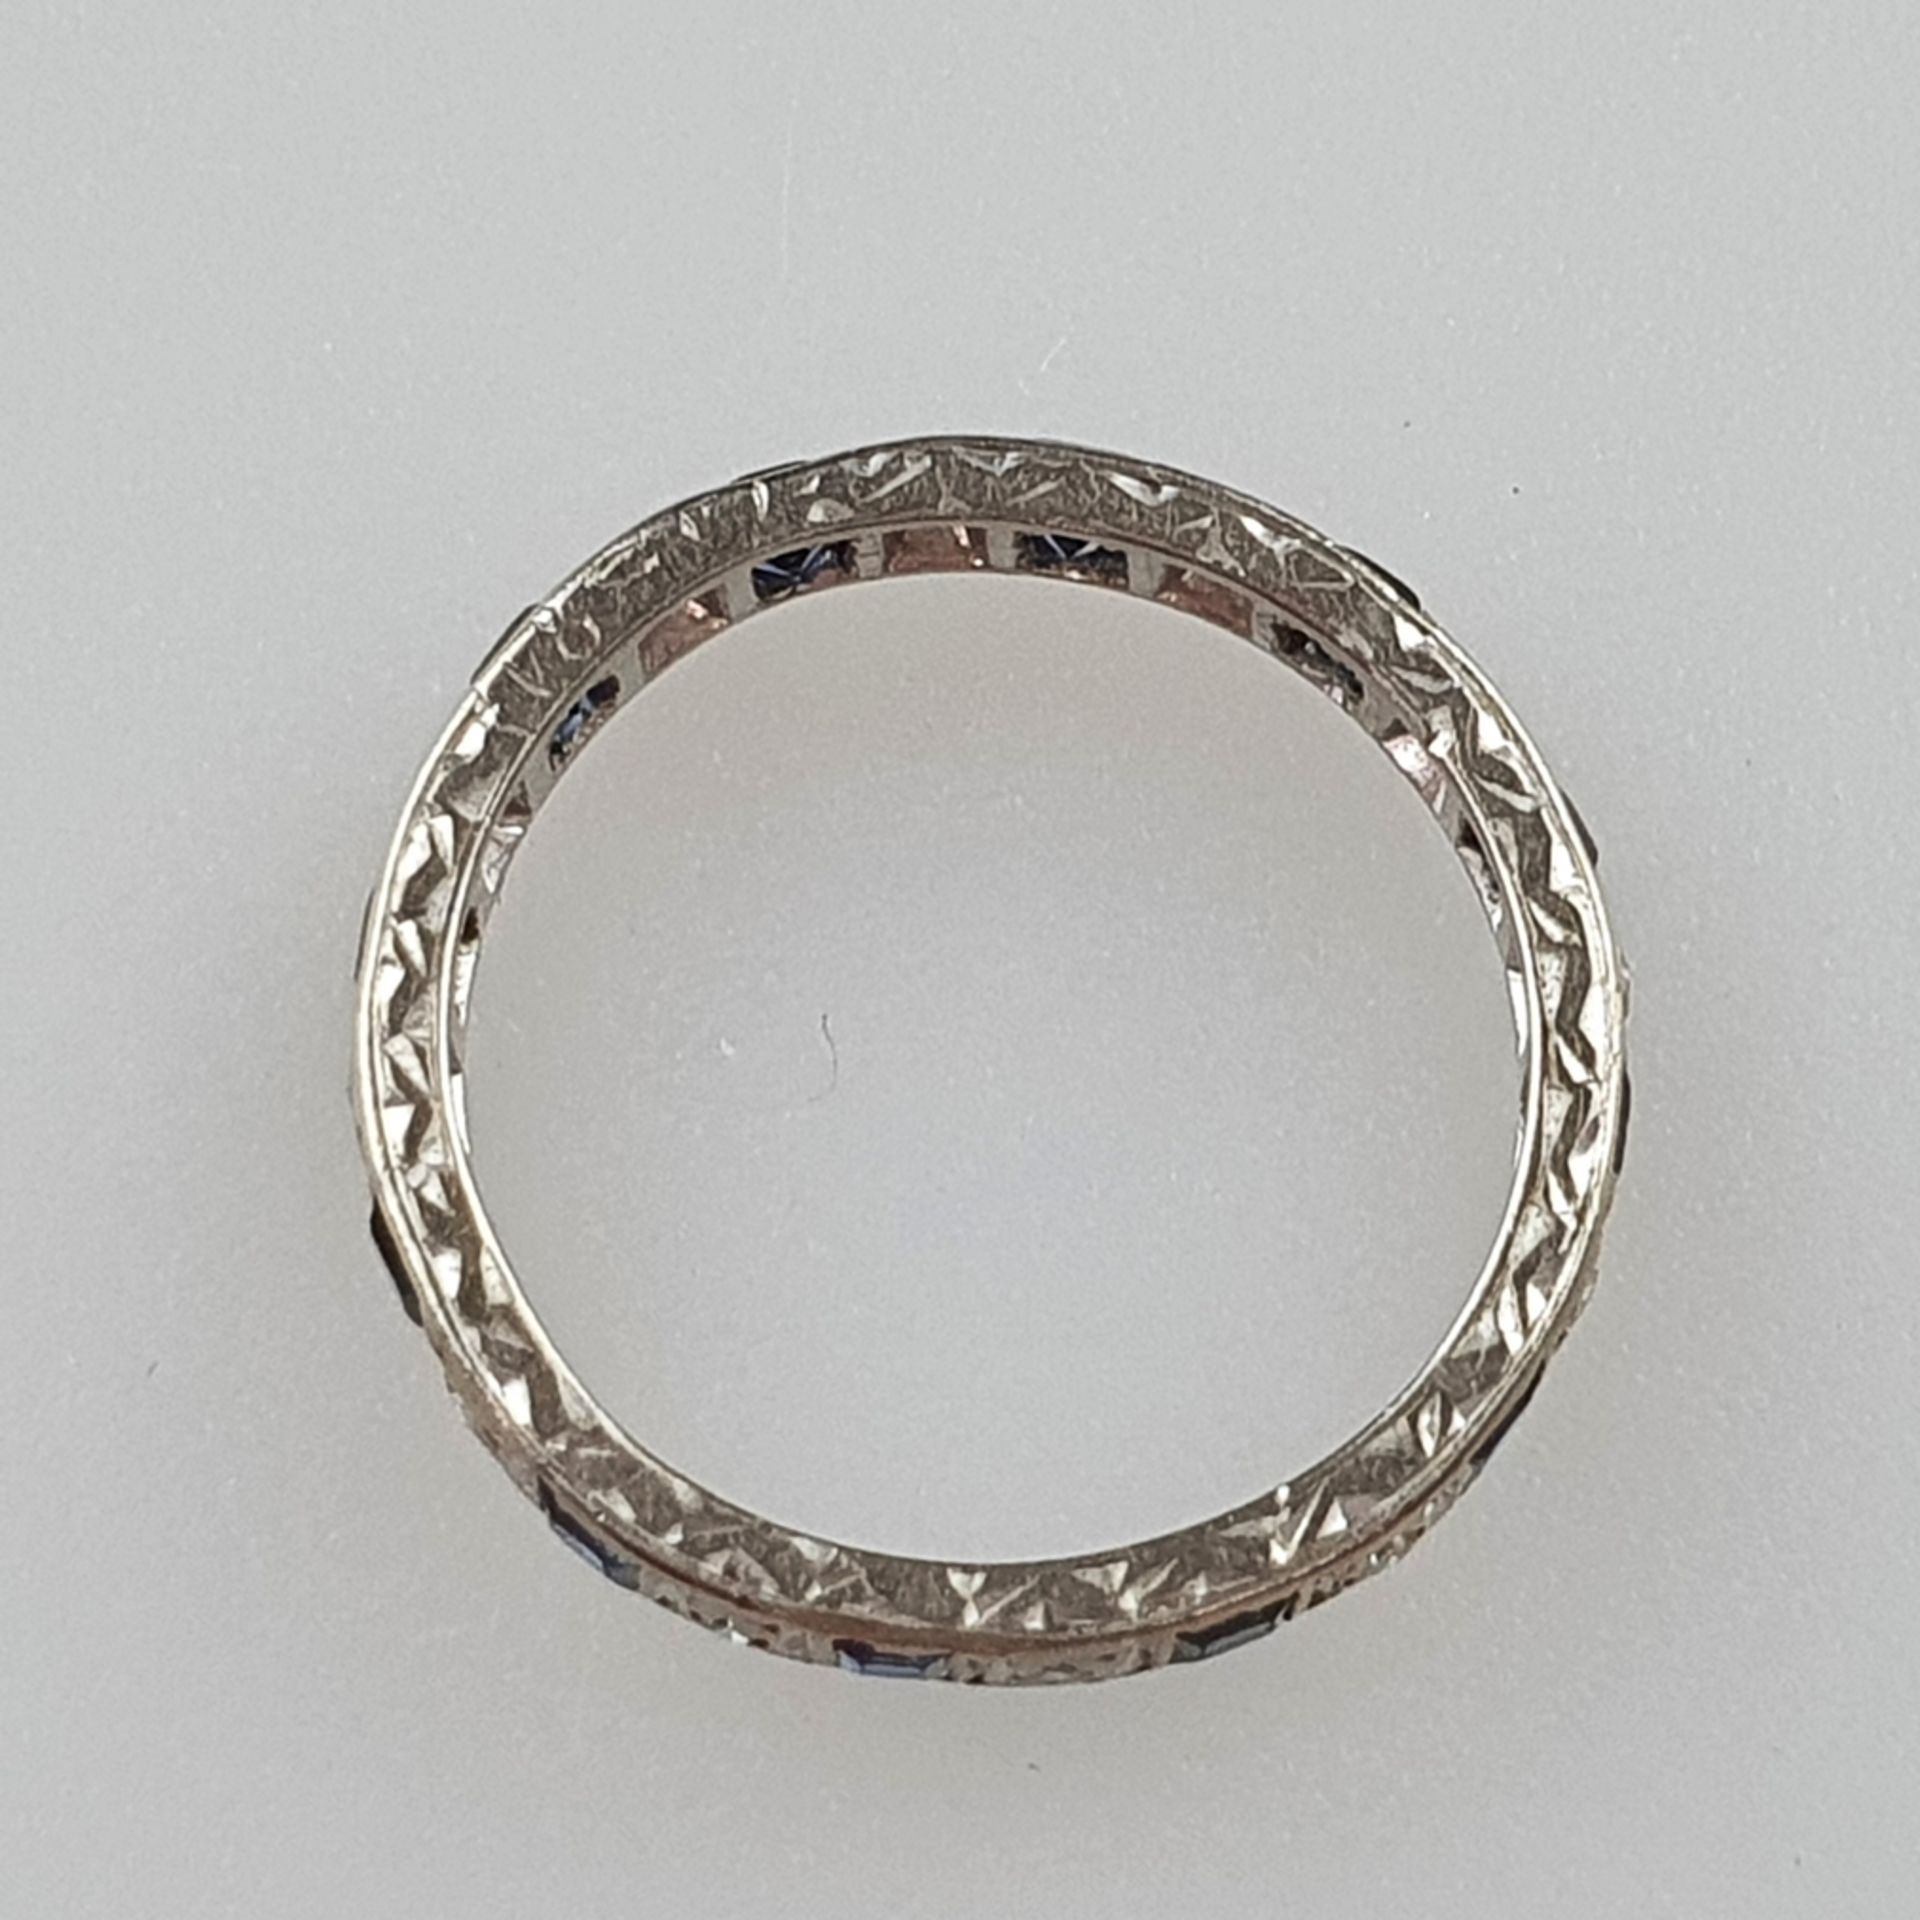 Eternity-Ring mit Saphirbesatz - Weißgold 750/000, seitlich graviert "18", besetzt mit 12 Saphiren - Image 3 of 3